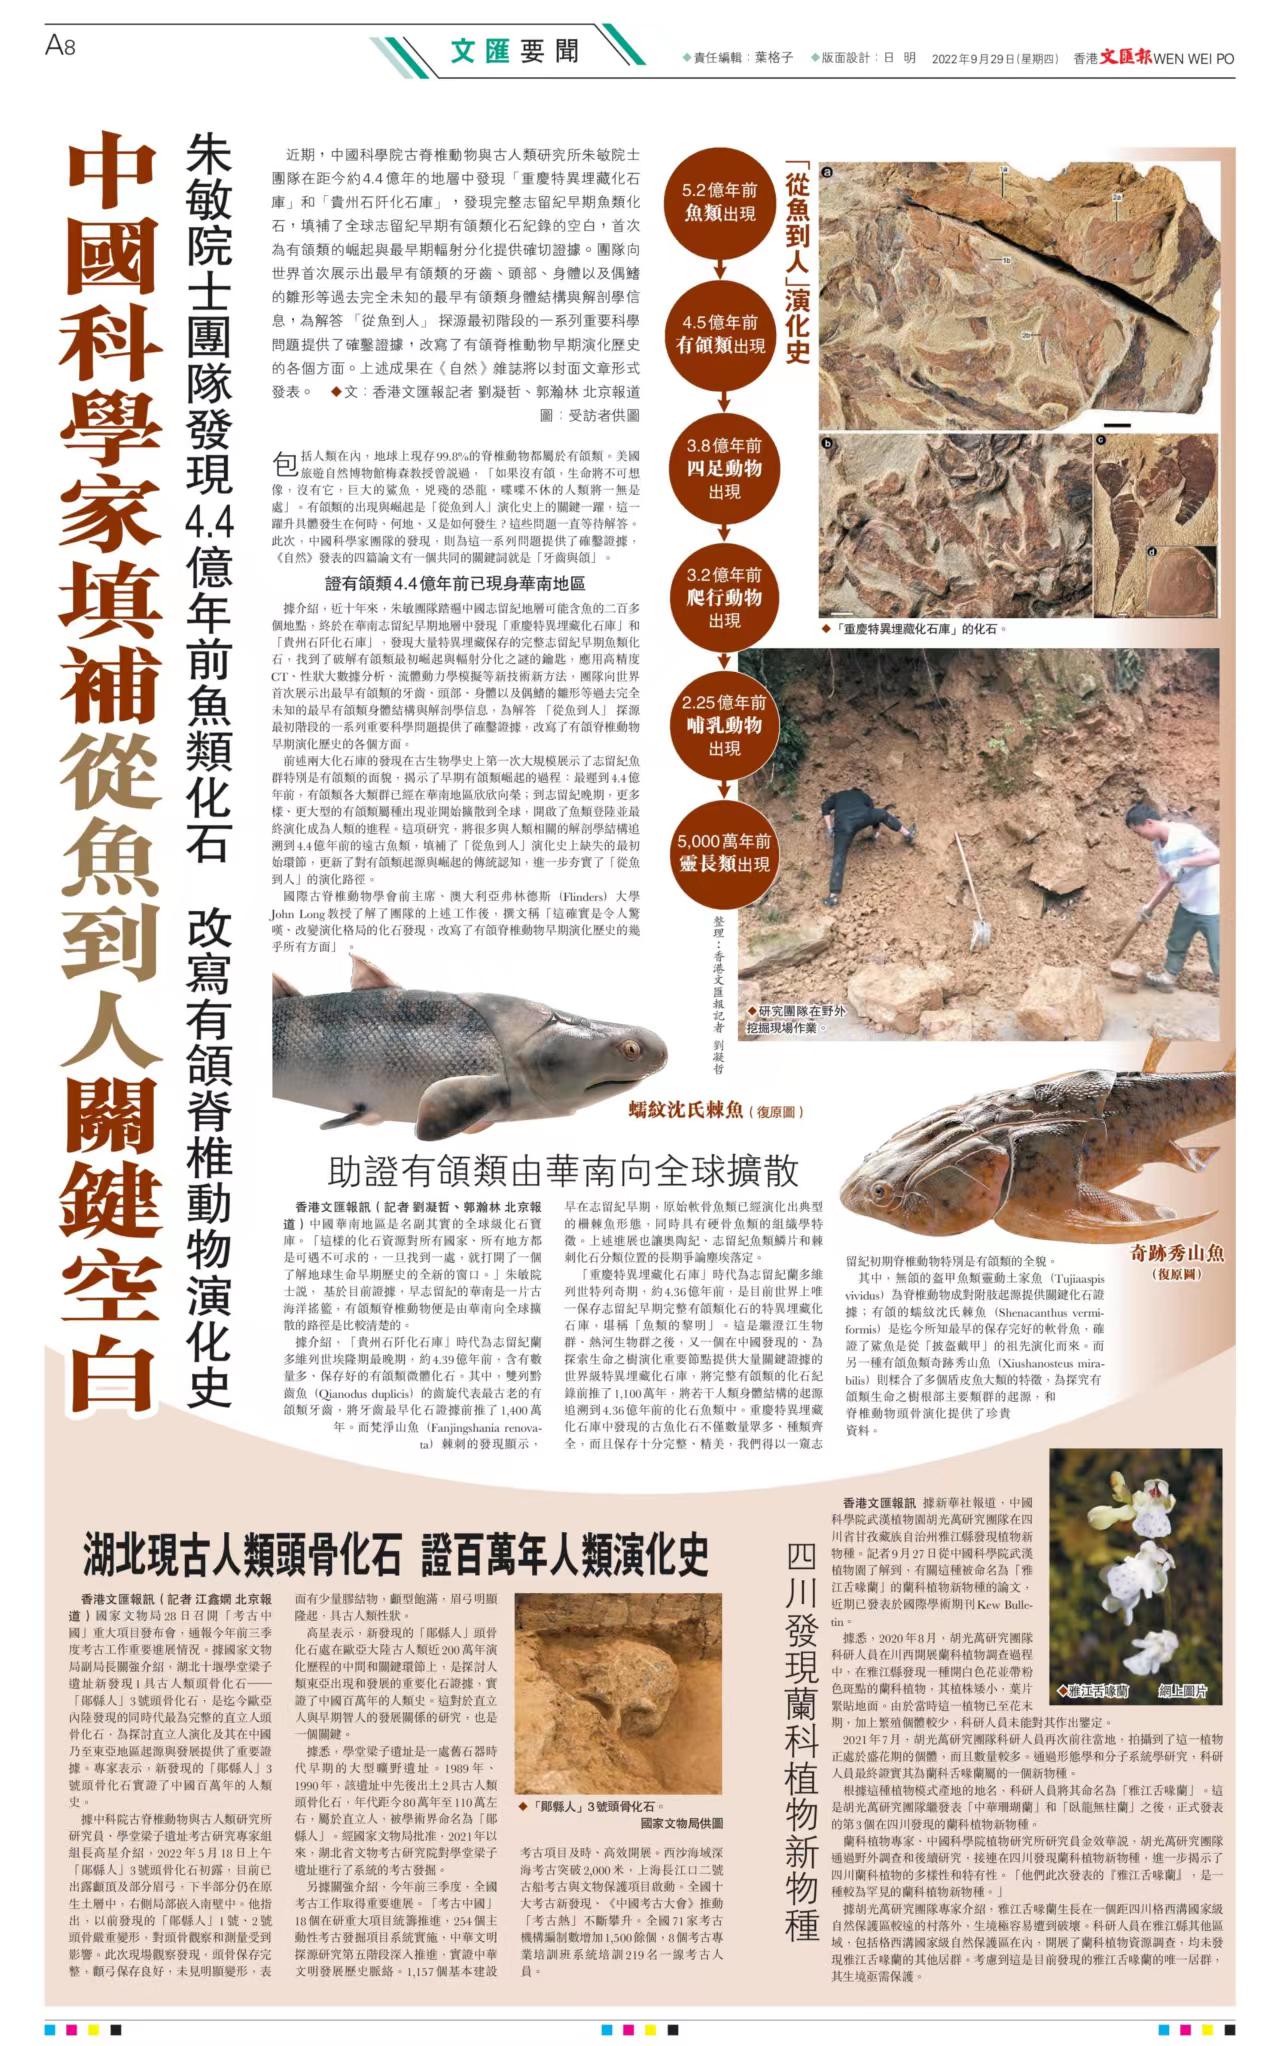 【香港文汇报】中国科学家填补从鱼到人关键空白